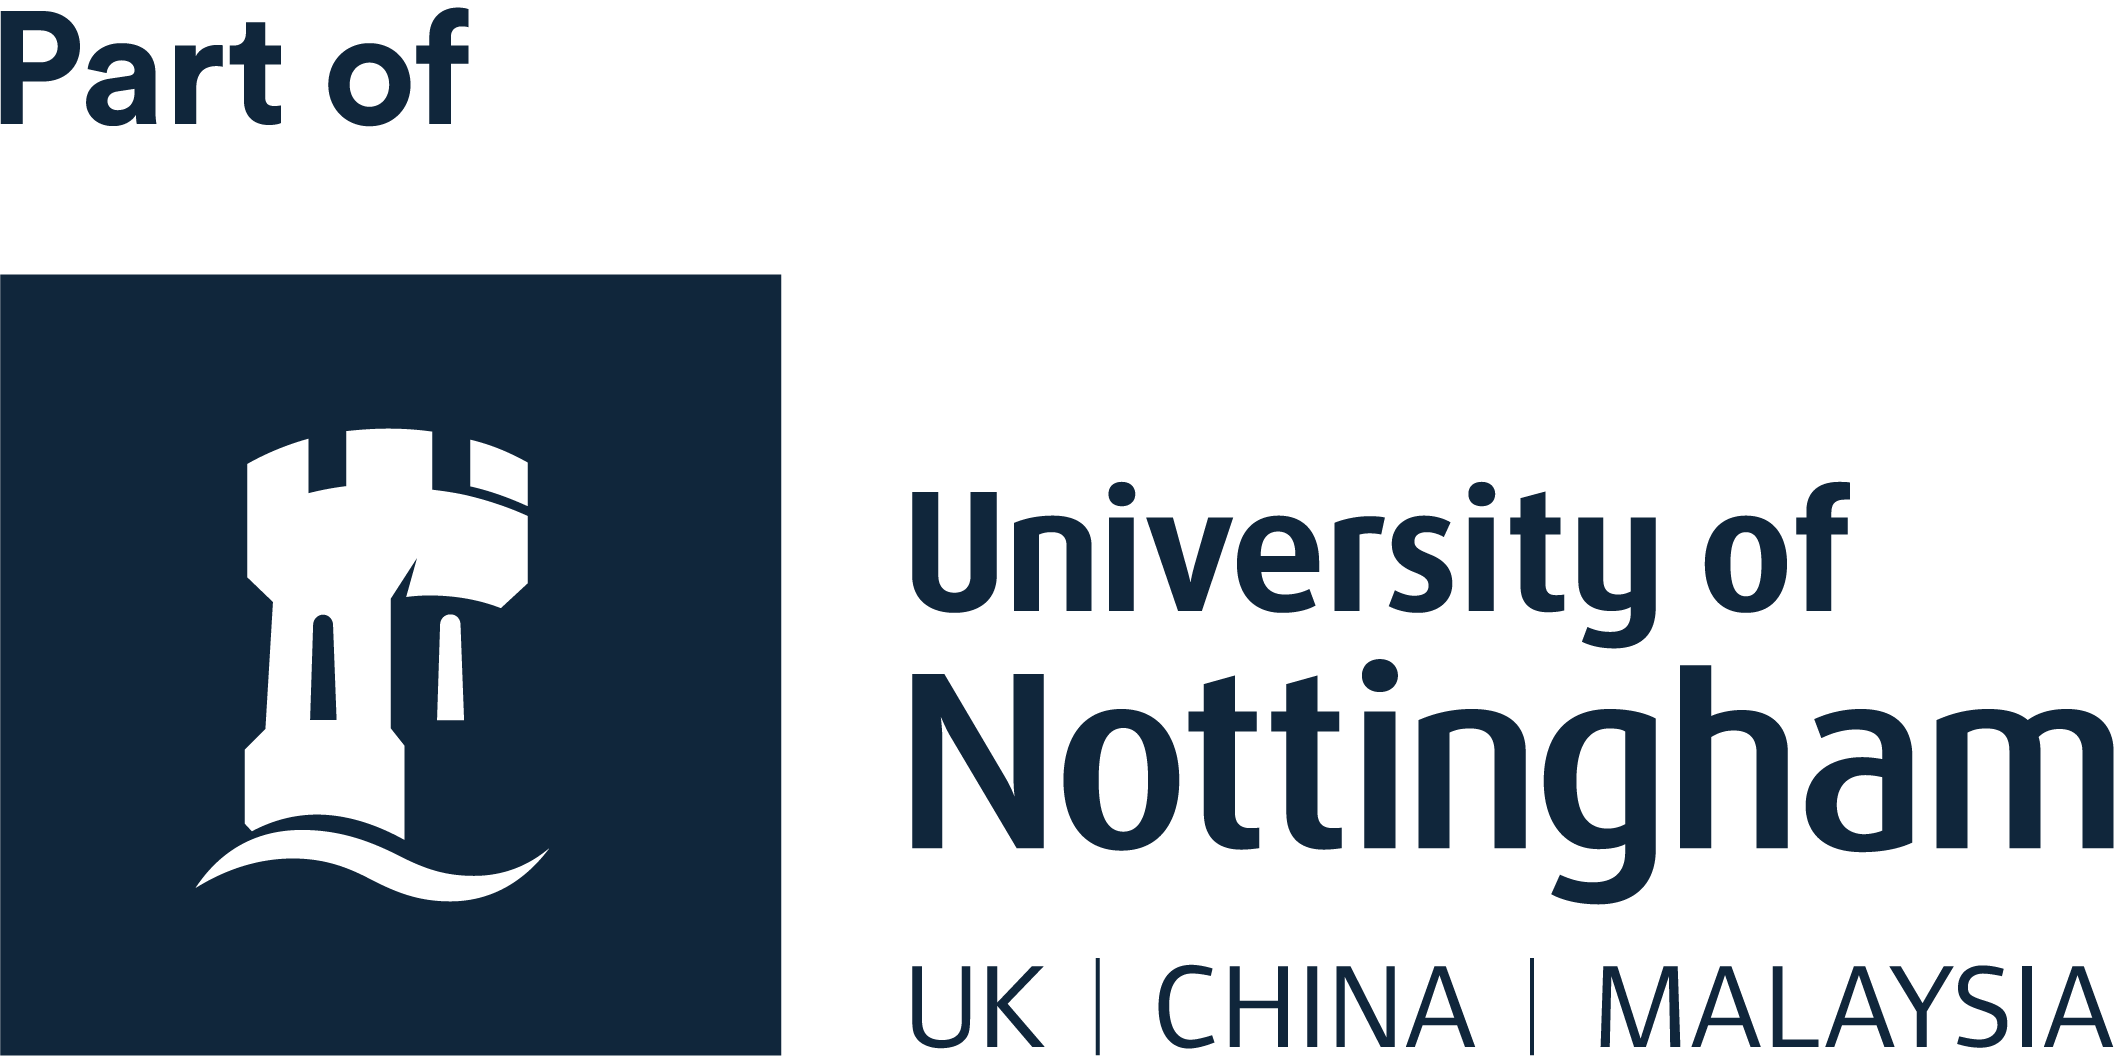 Part of University of Nottingham UK | China | Malaysia